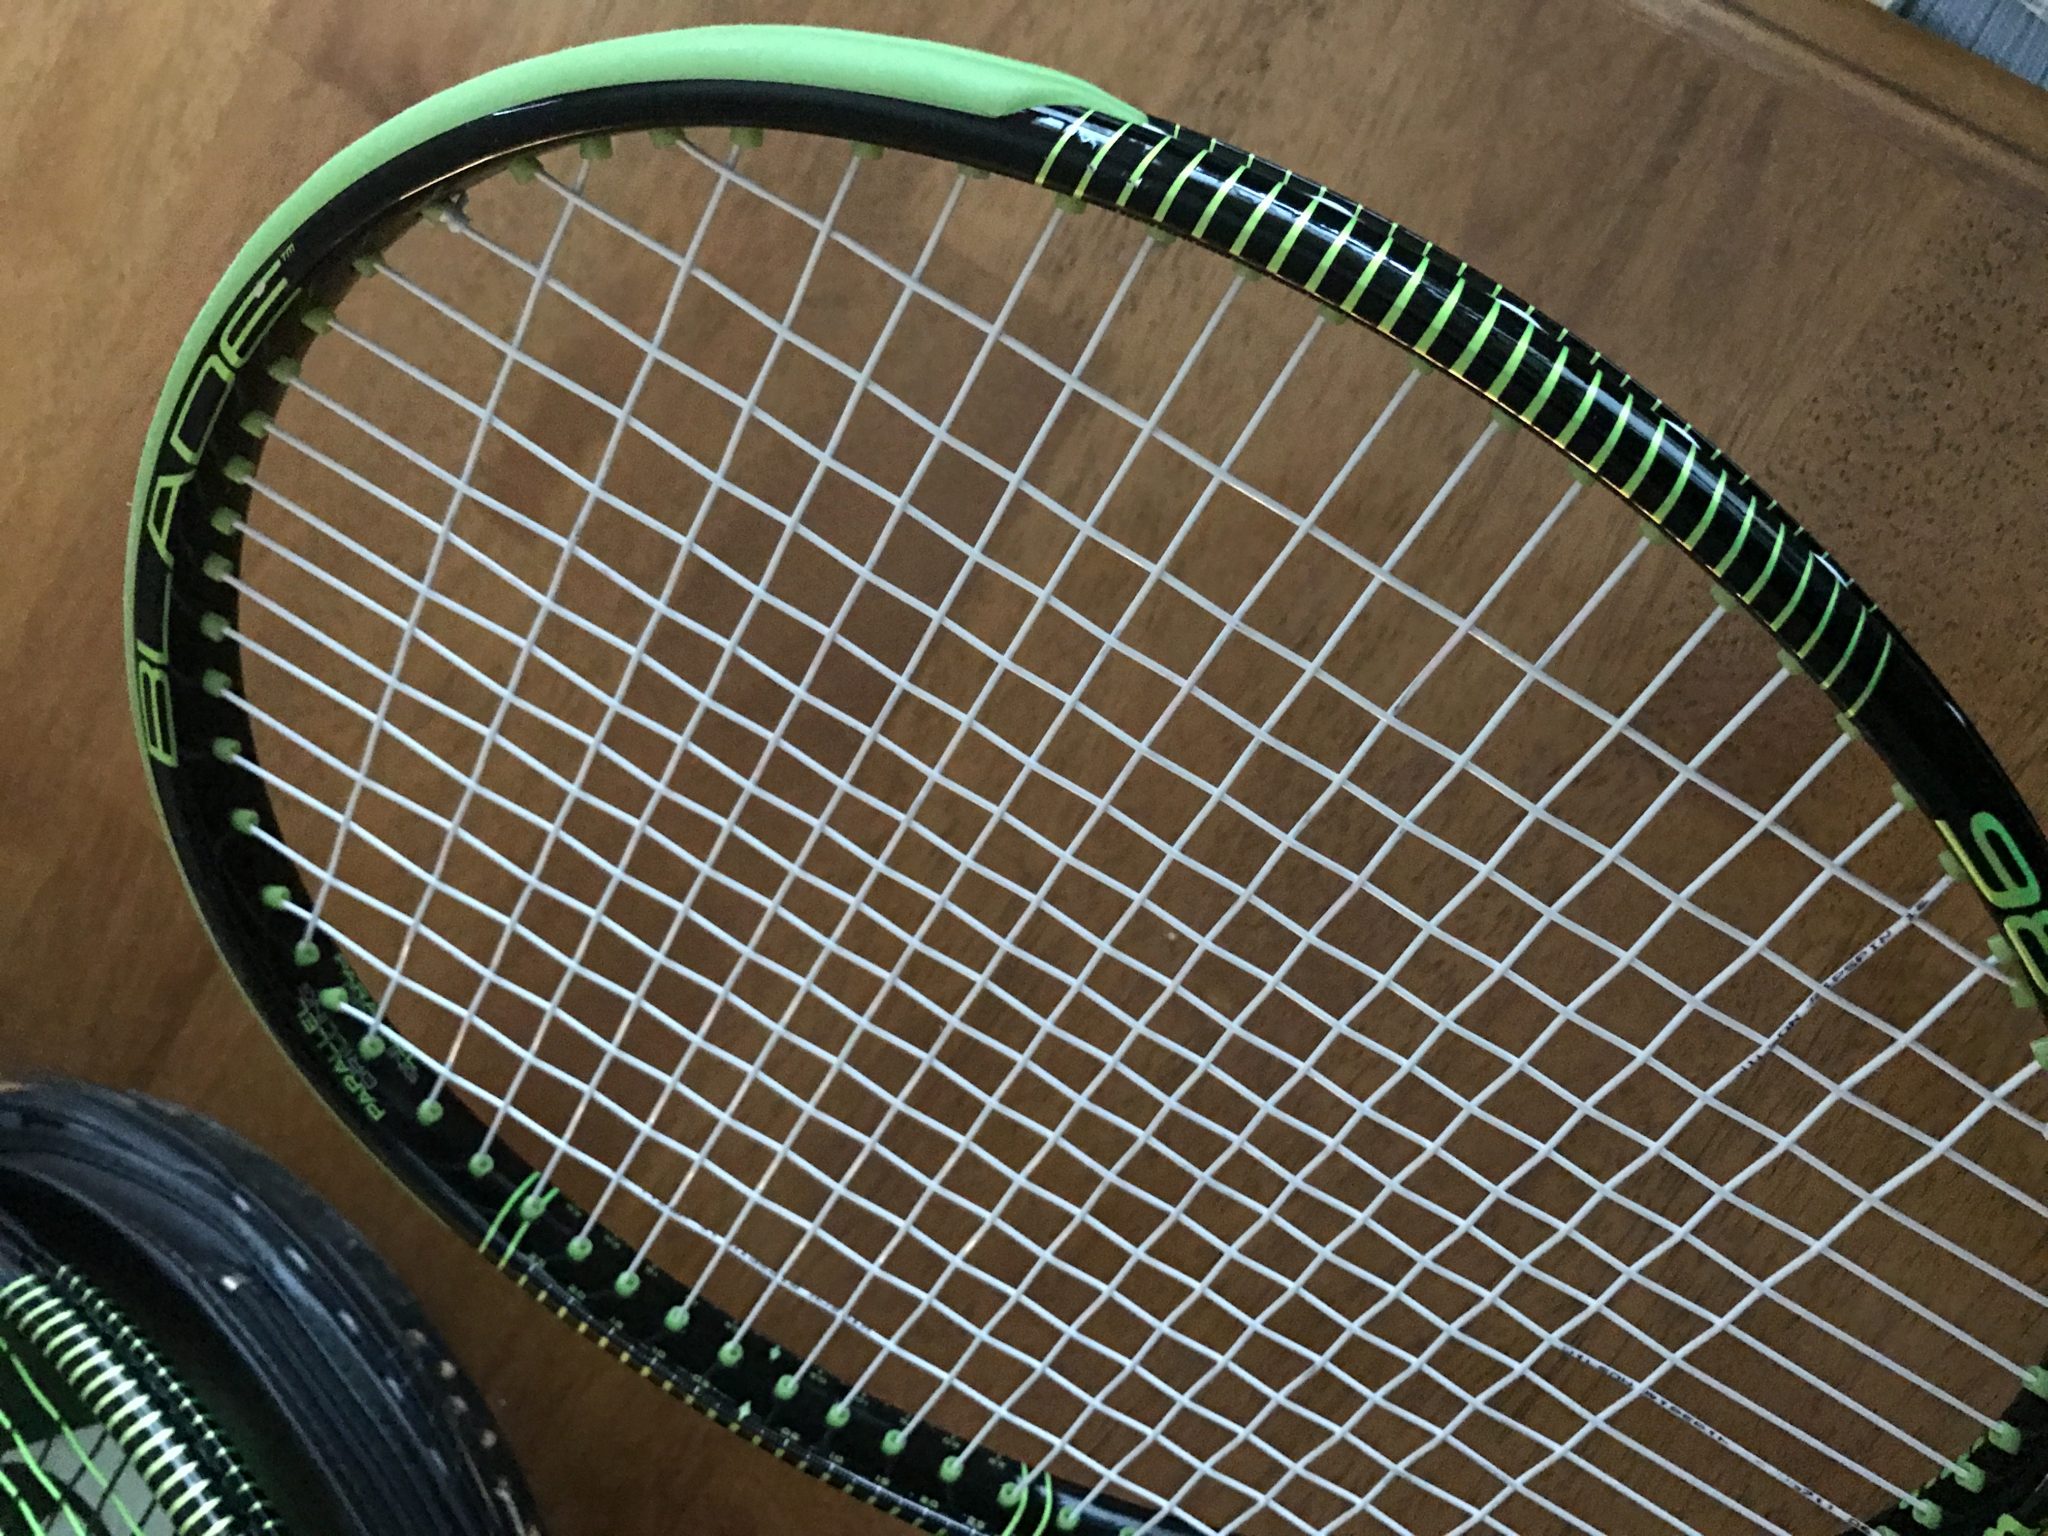 Racquets for sale | Tennisnerd.net